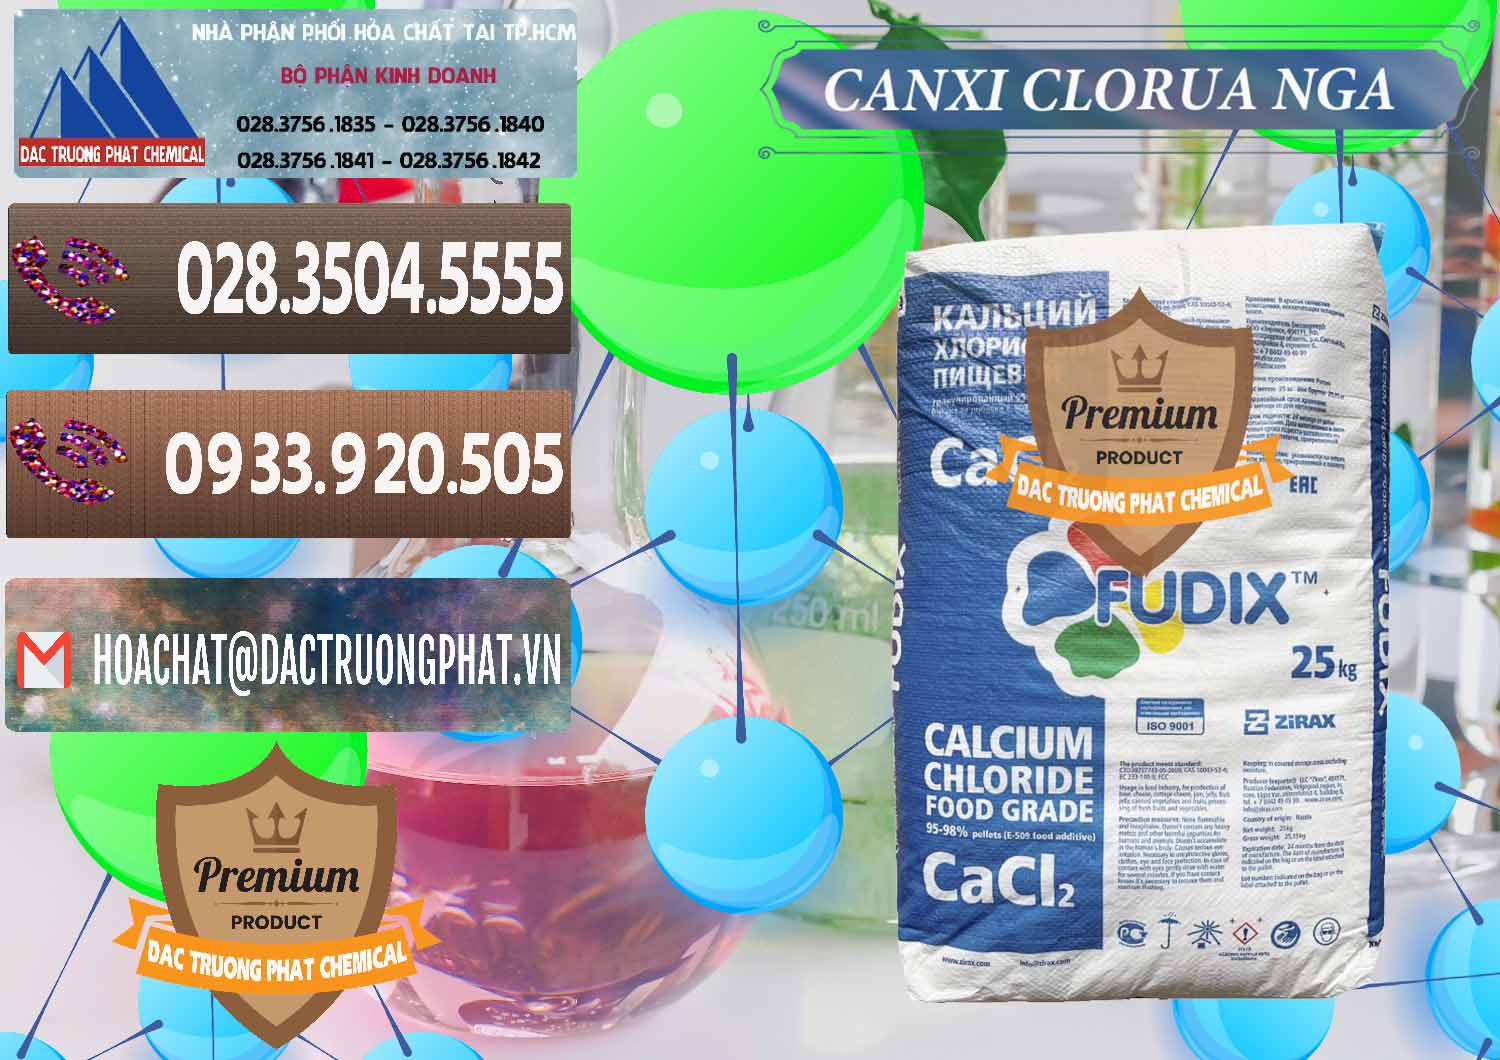 Chuyên bán & phân phối CaCl2 – Canxi Clorua Nga Russia - 0430 - Cty phân phối ( nhập khẩu ) hóa chất tại TP.HCM - hoachatviet.net